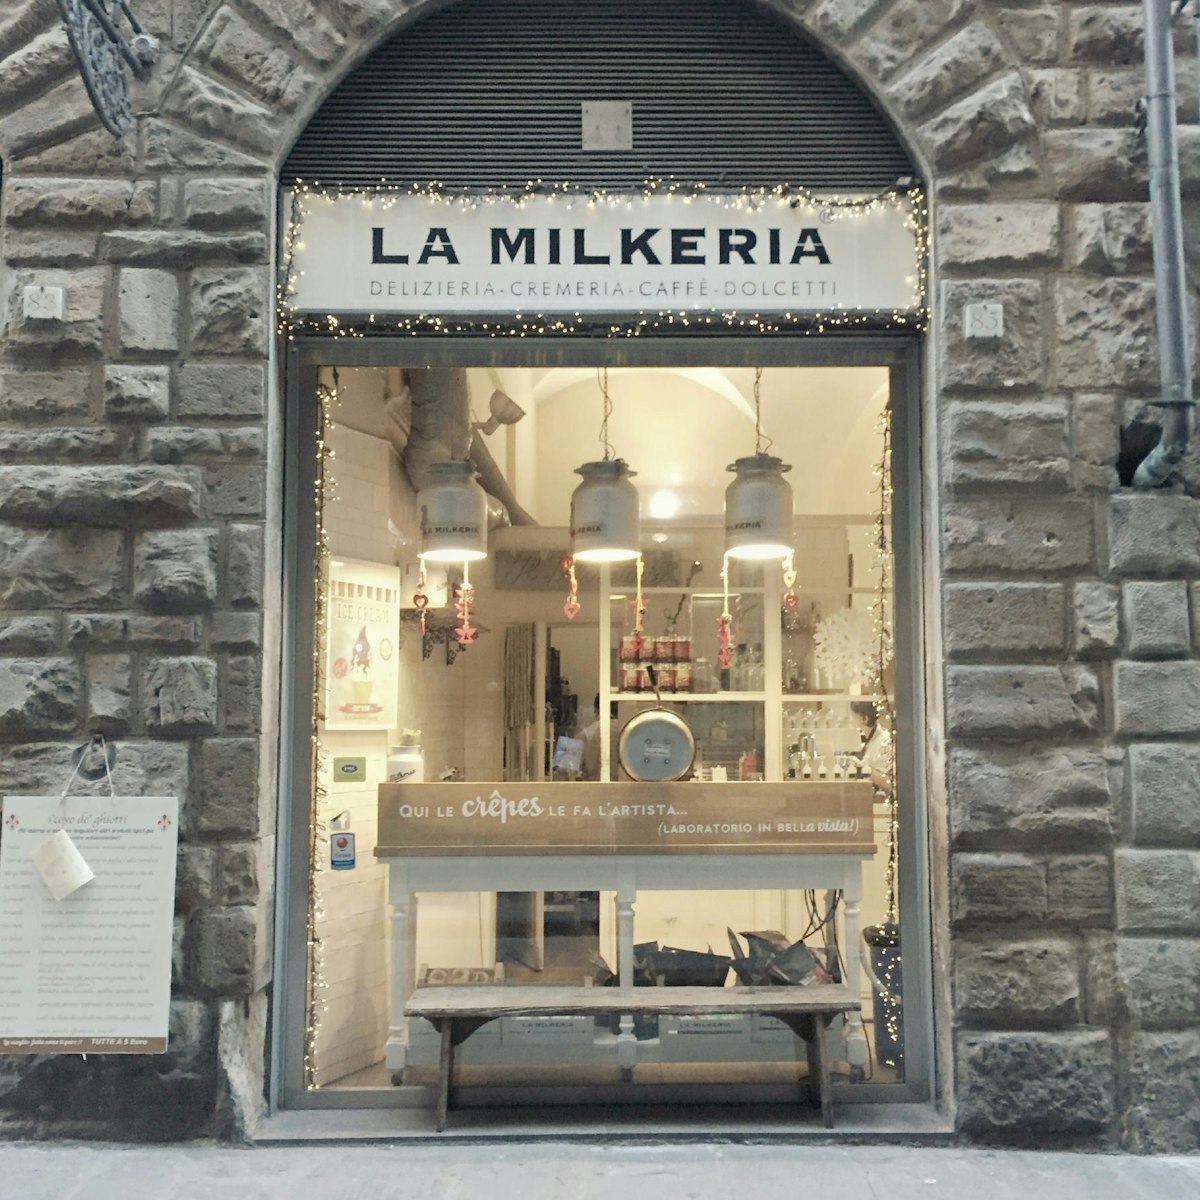 La Milkeria, shop front